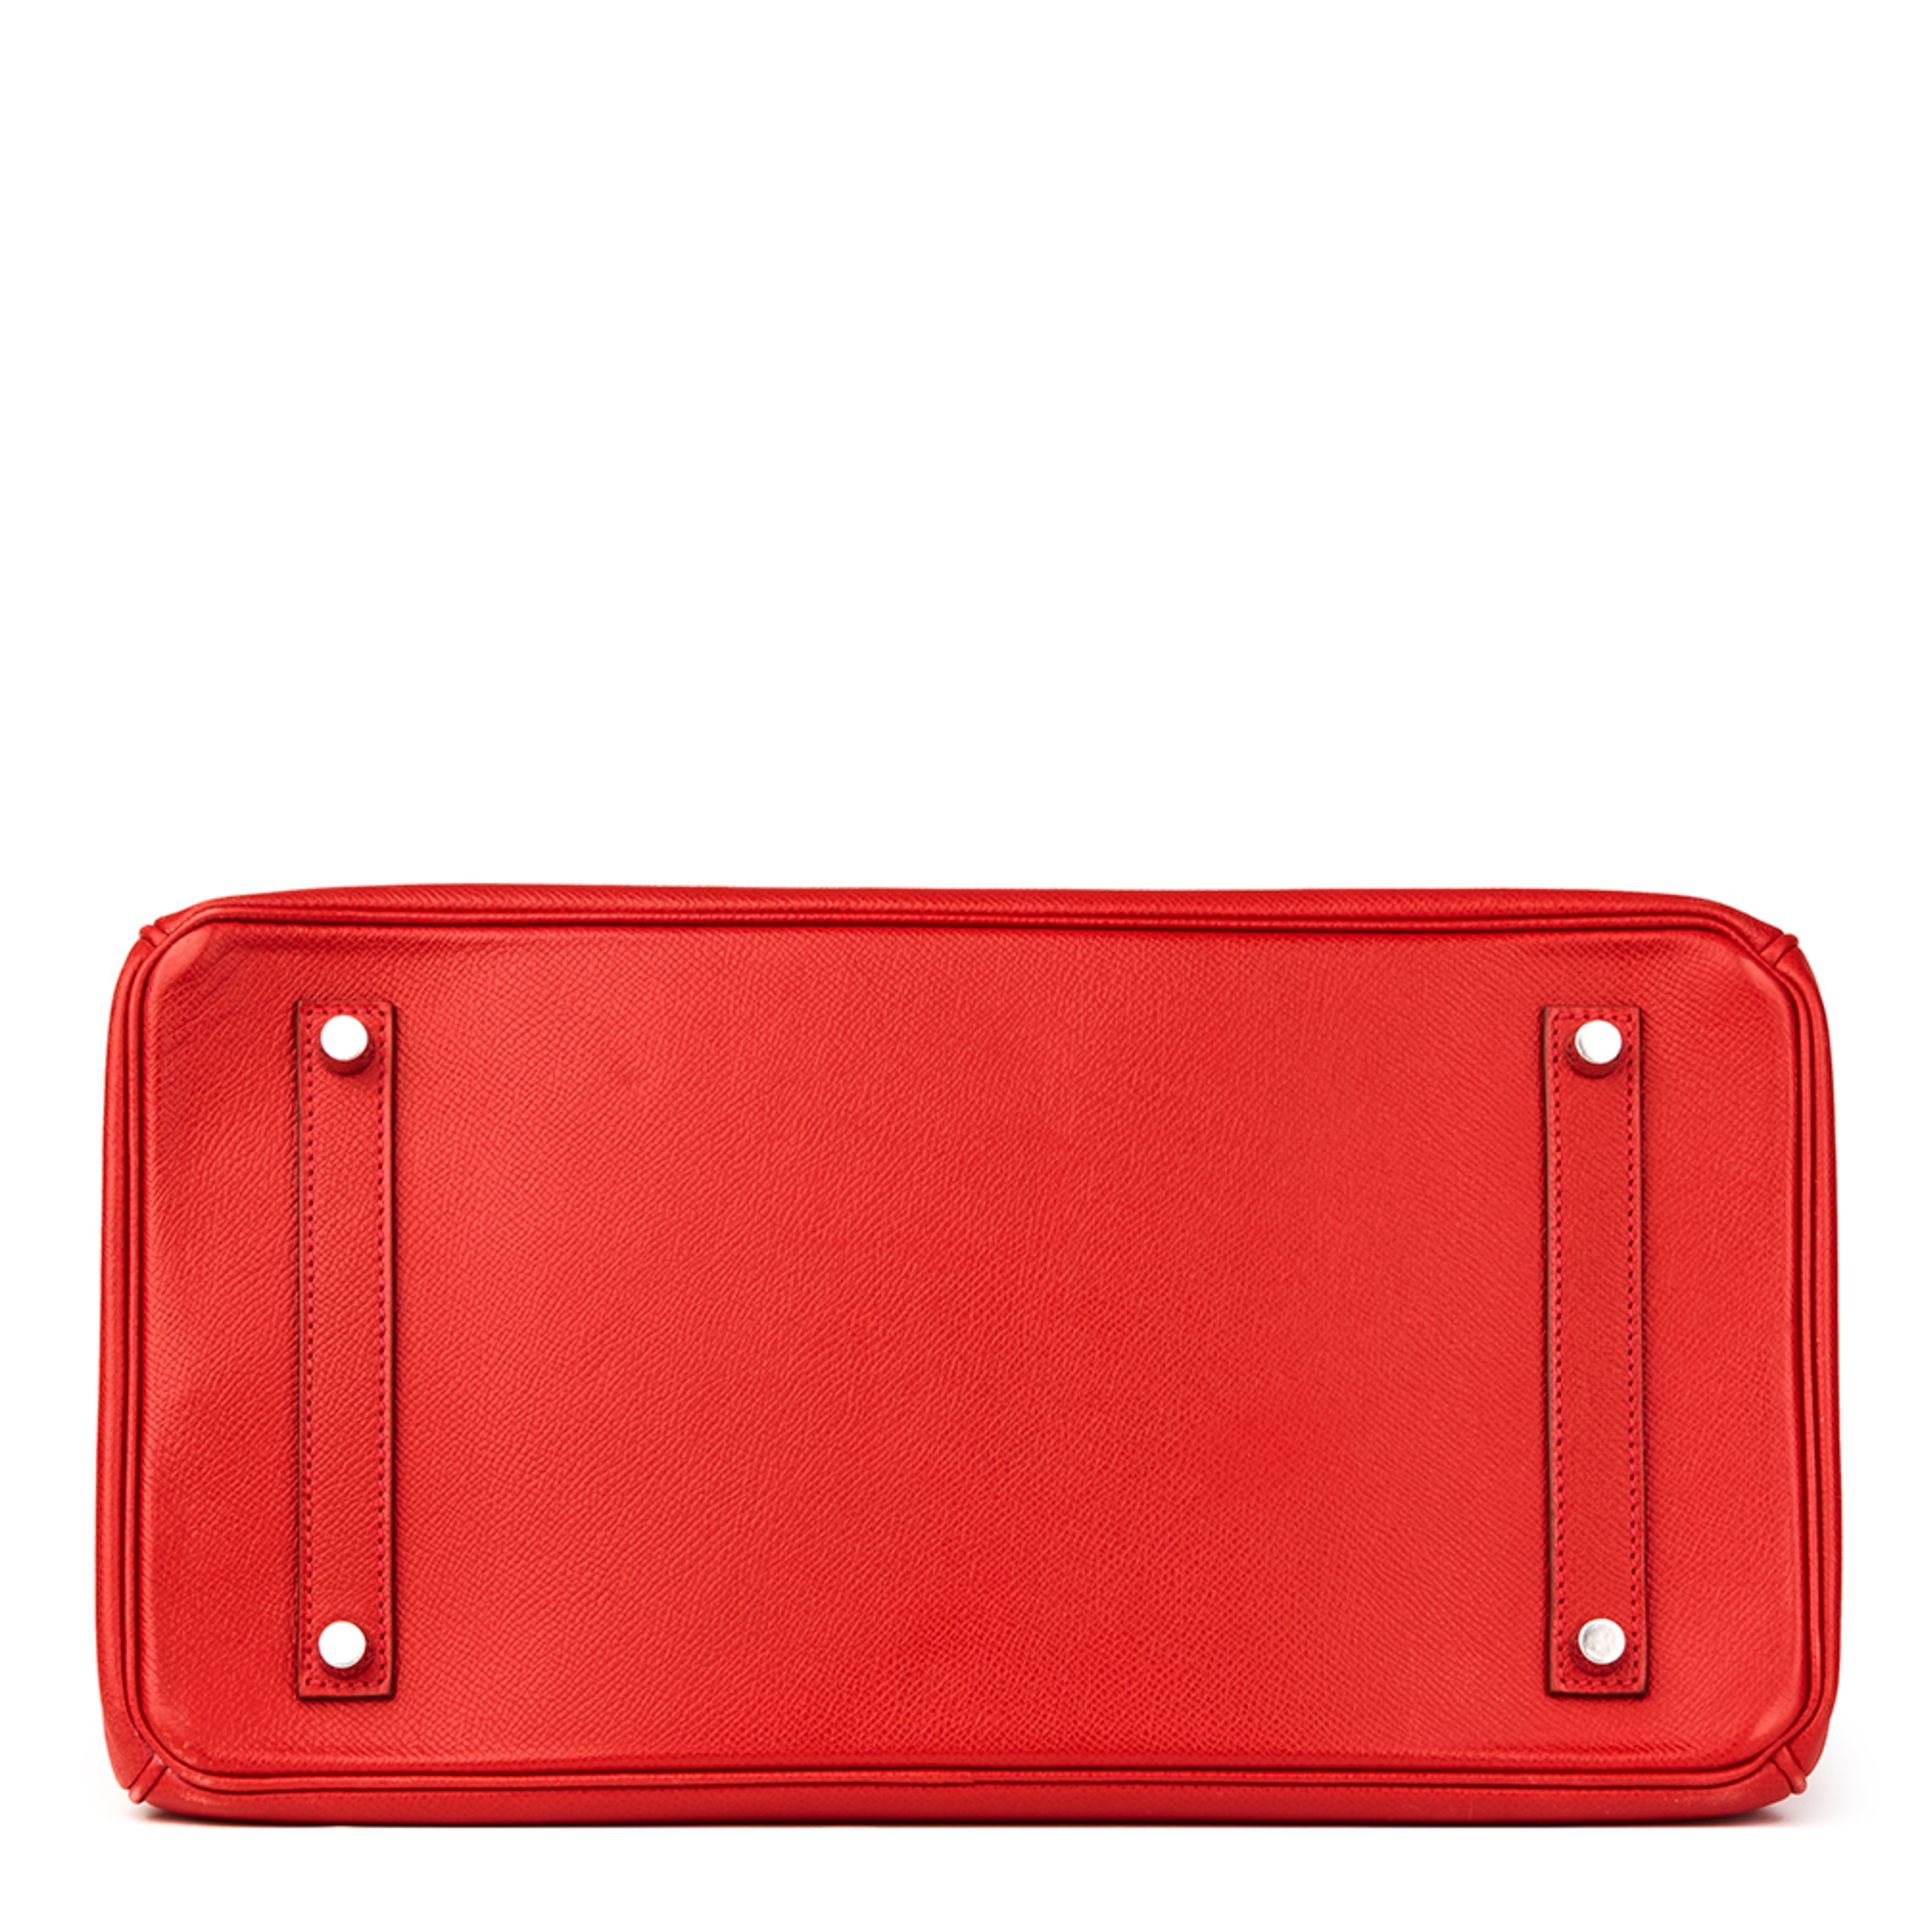 Hermès Rouge Casaque Epsom Leather Birkin 35cm - Image 4 of 11